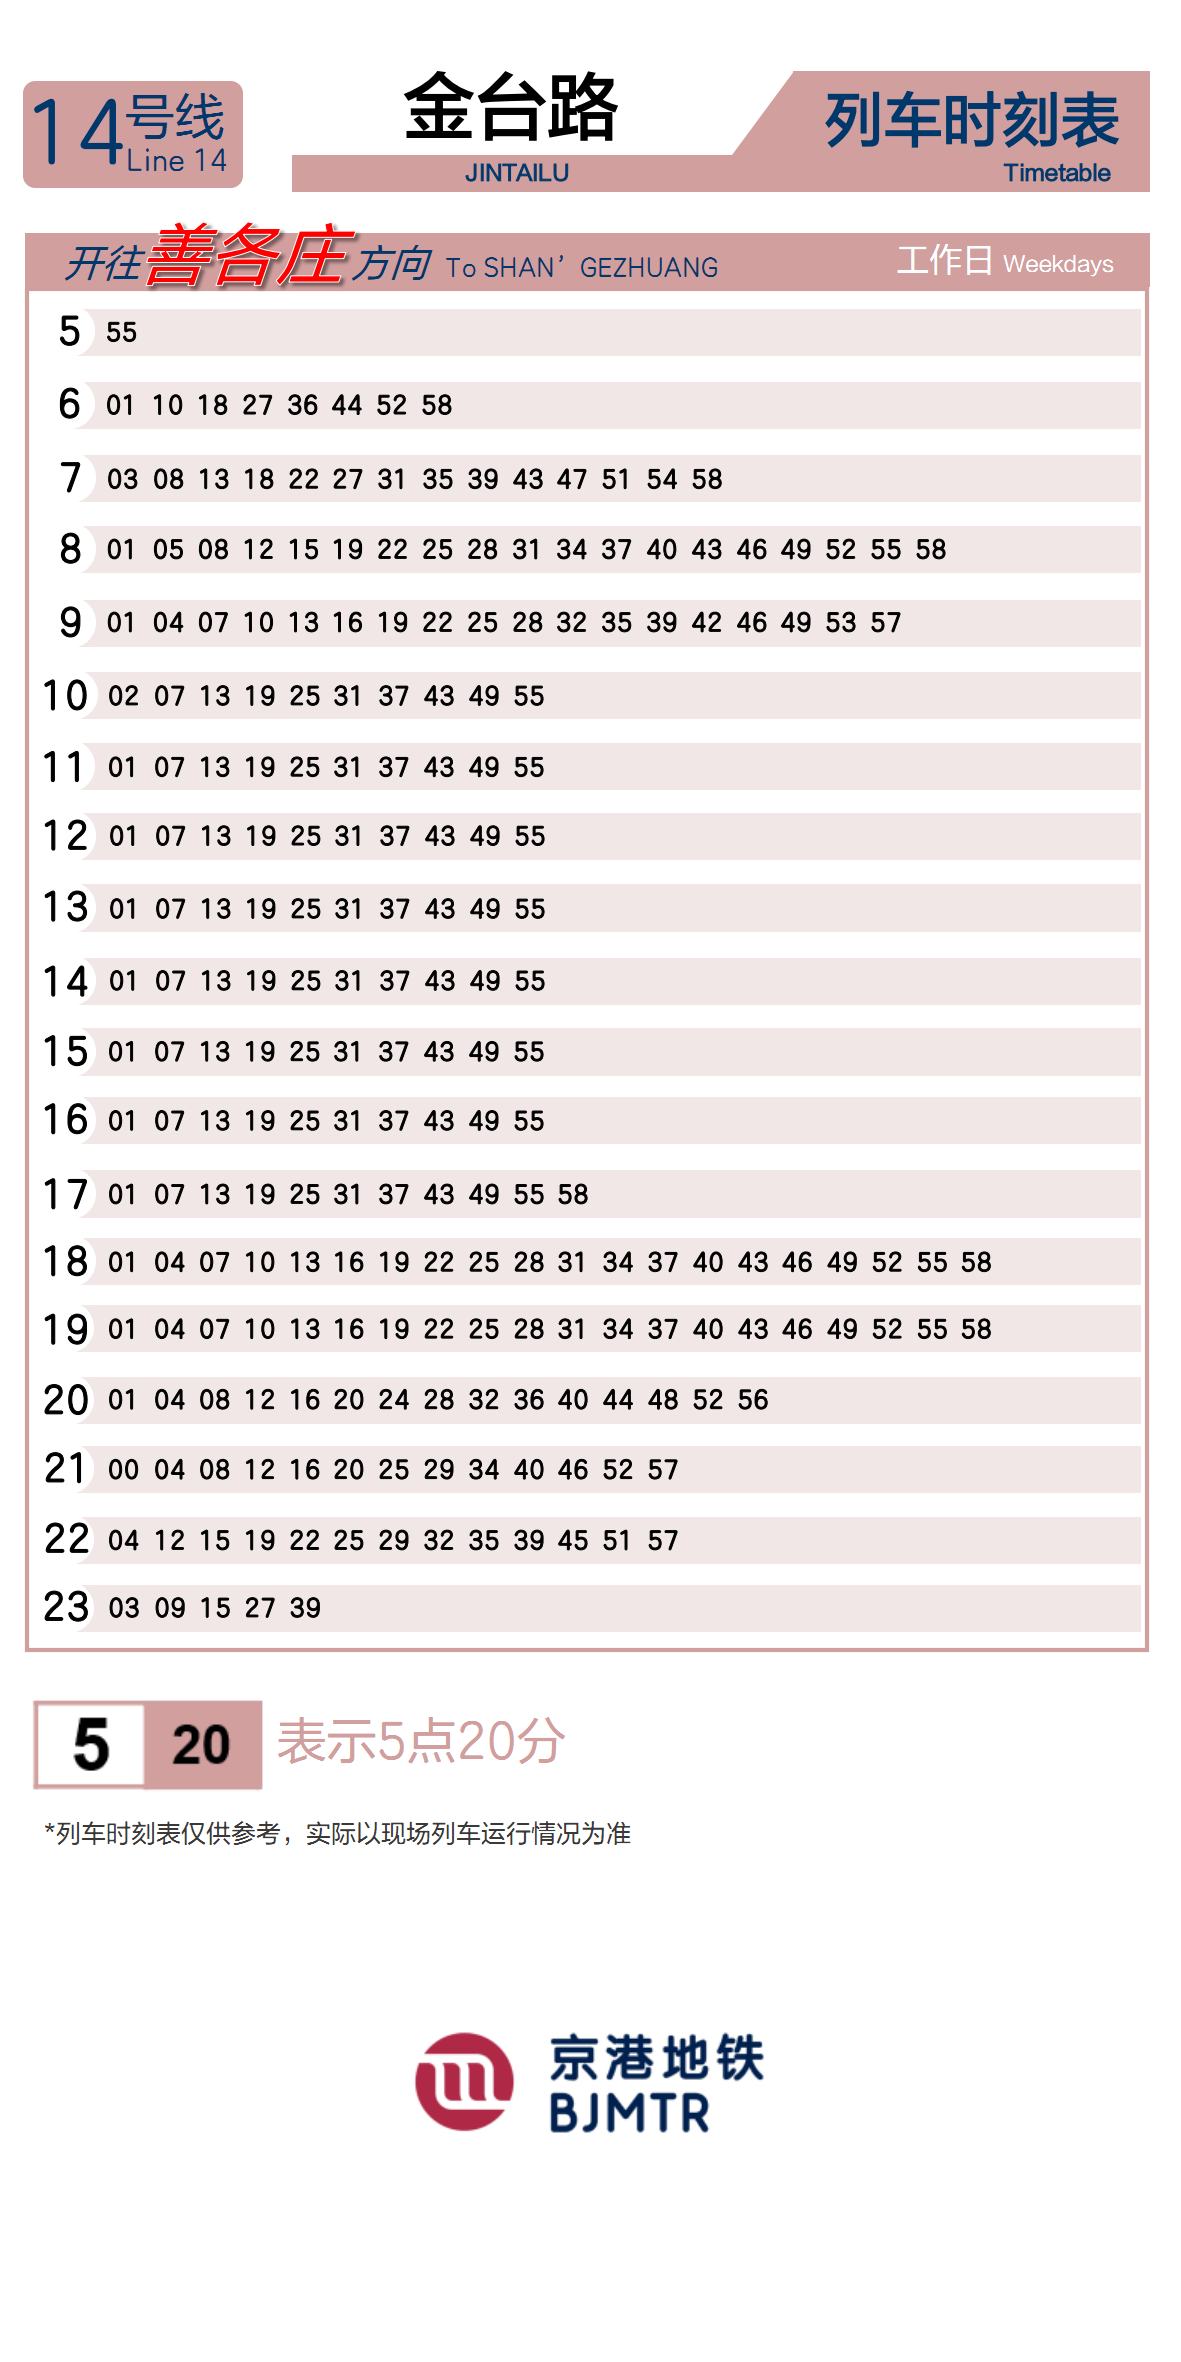 Line 14Jintai Lu时刻表